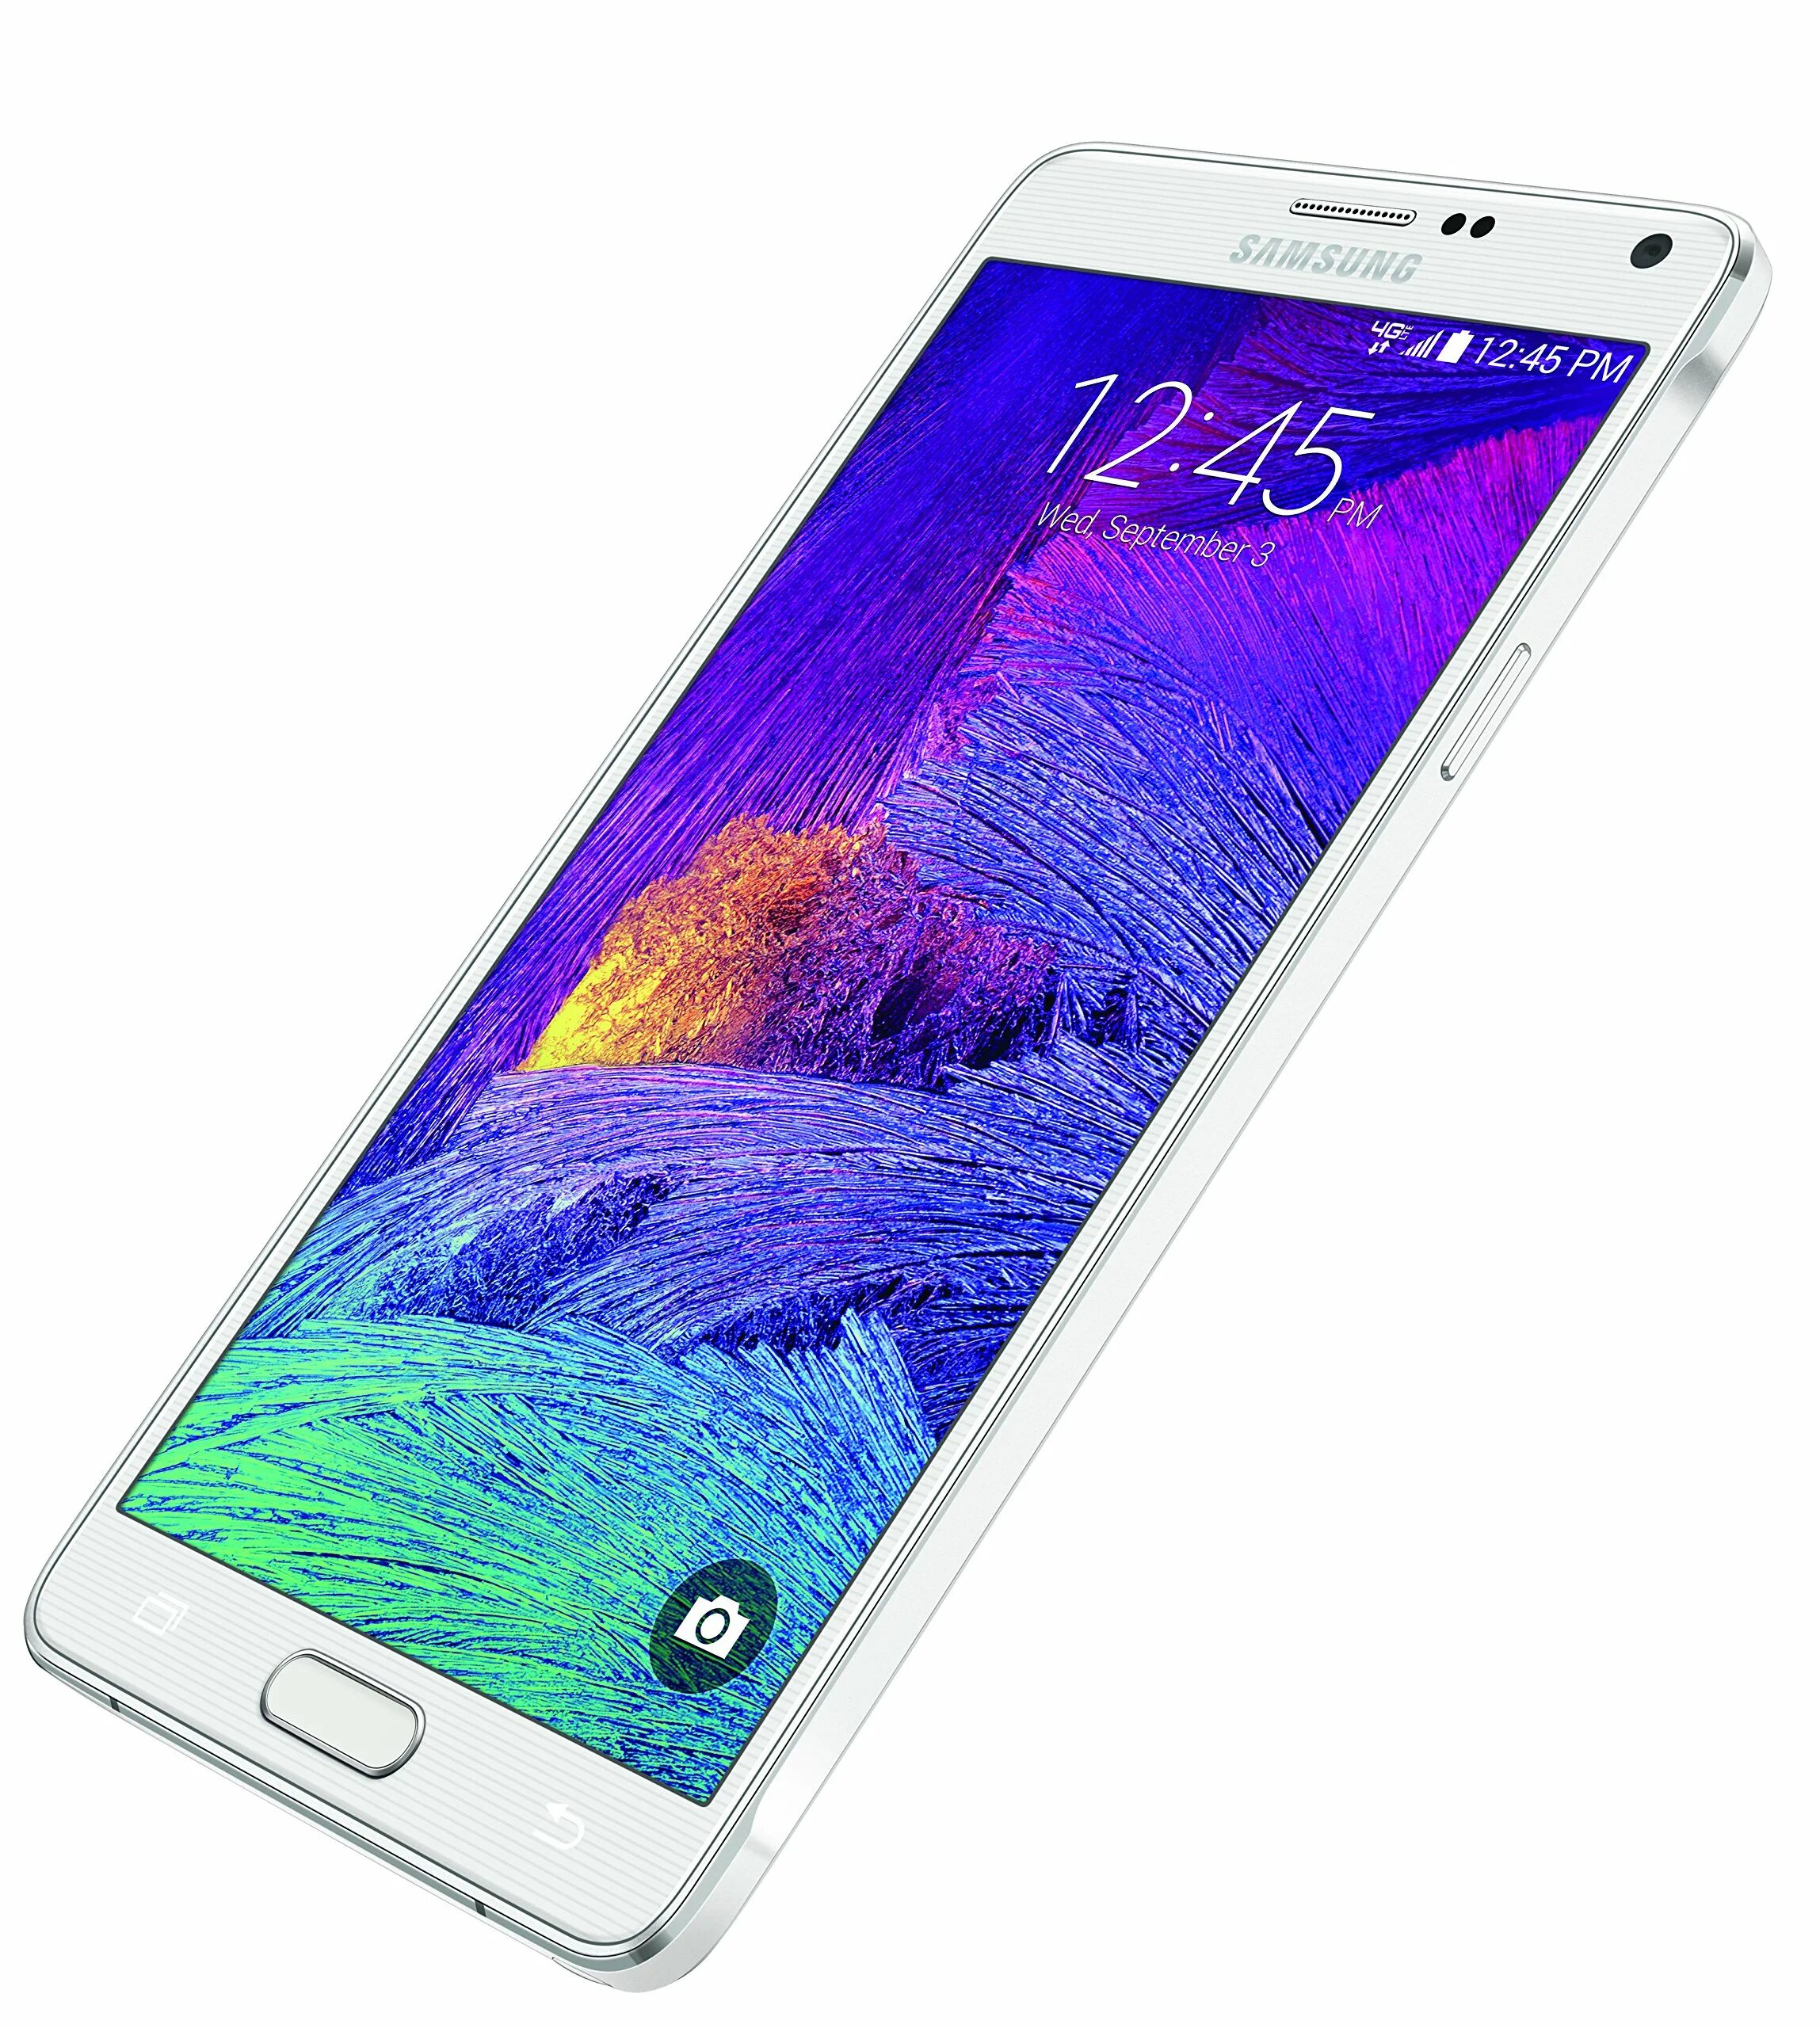 Экран note 4. Samsung Galaxy Note 4. Samsung Galaxy Note 4 SM-n910c. Samsung Galaxy Note 4 910f. Samsung Galaxy Note 4 White.